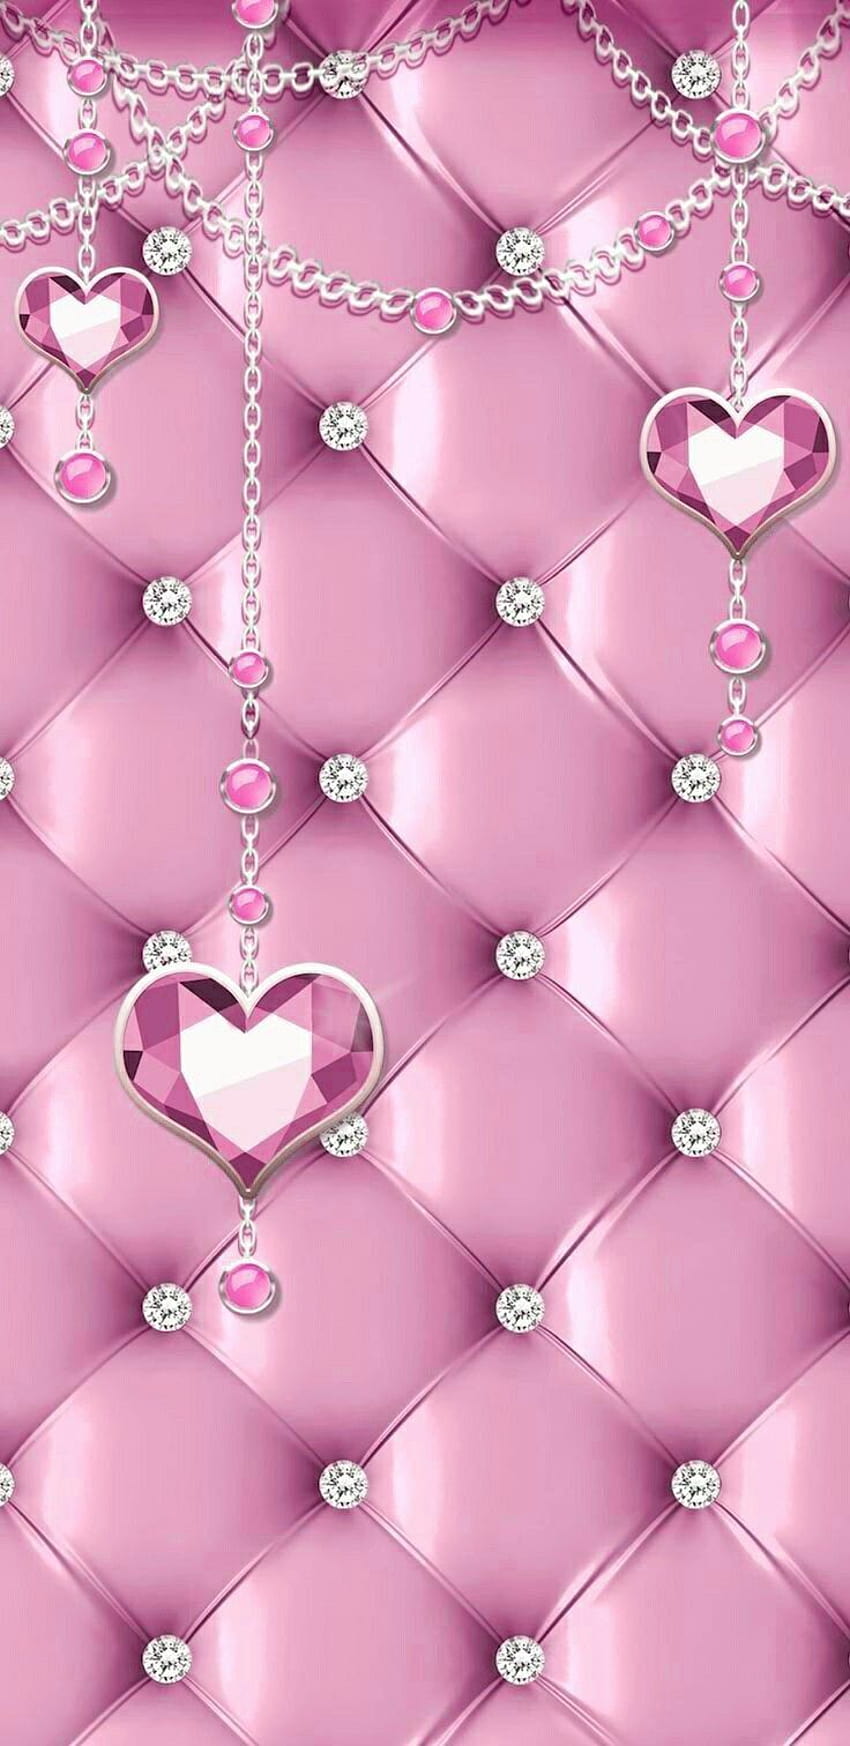 Pink Bling, berlian imitasi merah muda gelap wallpaper ponsel HD